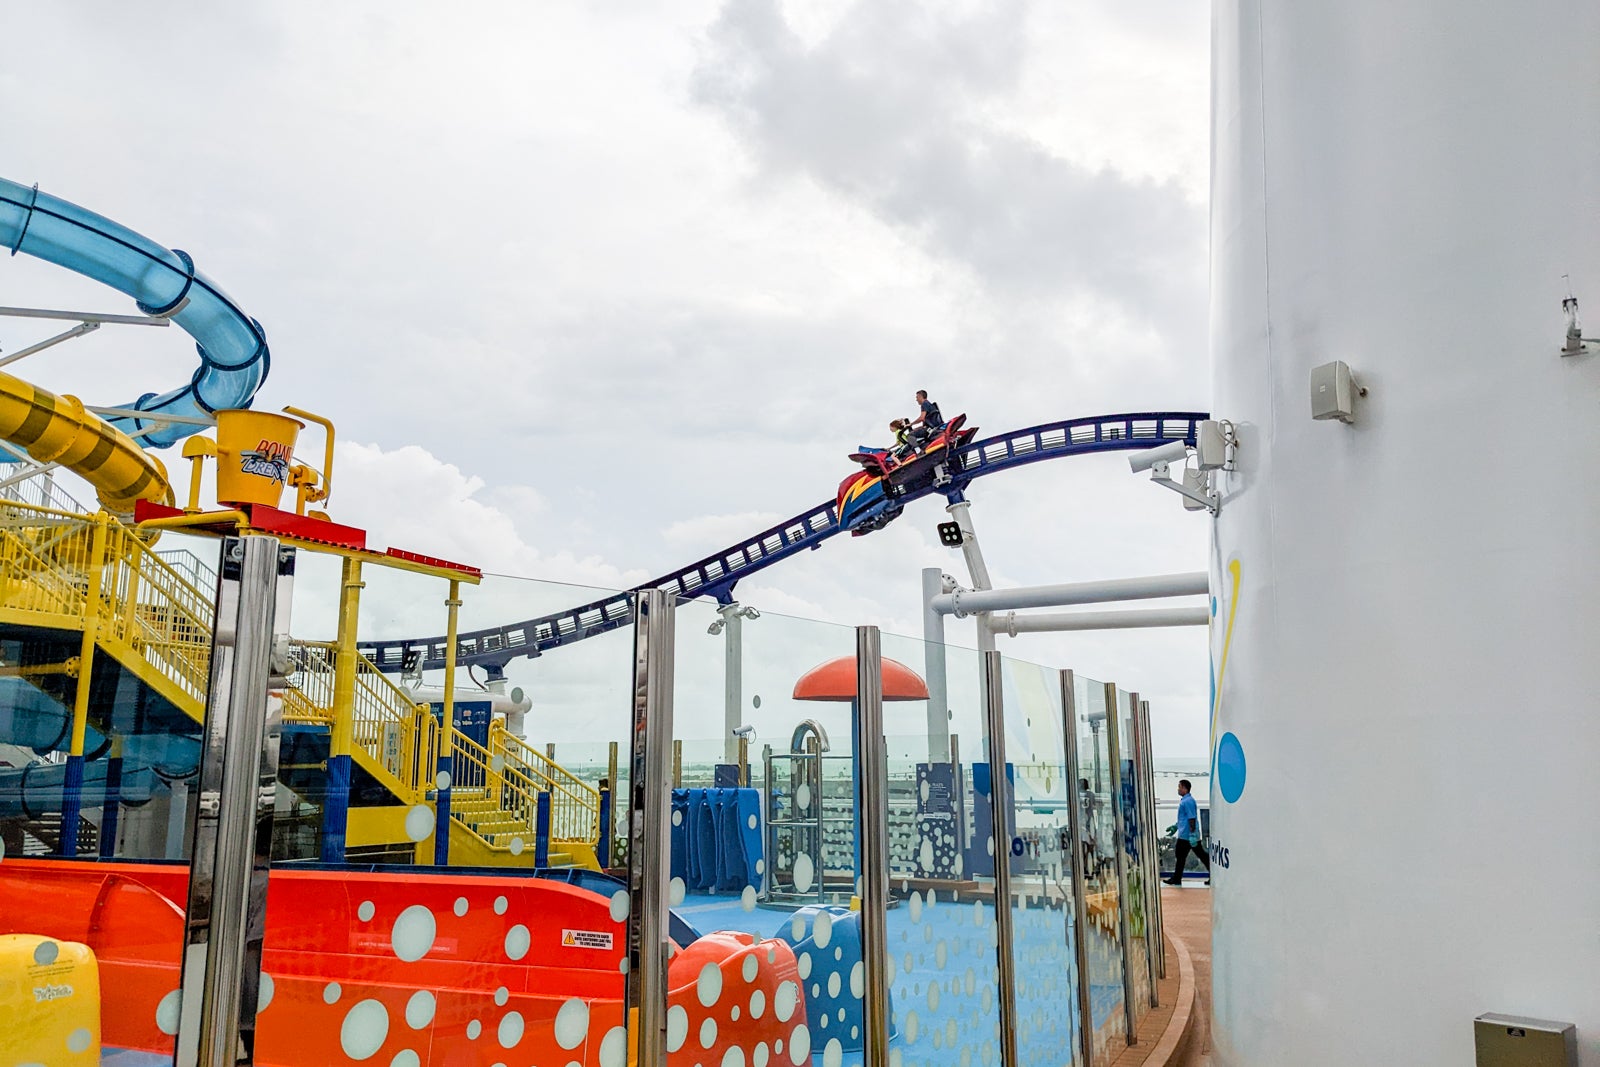 Bolt roller coaster on Carnival Celebration